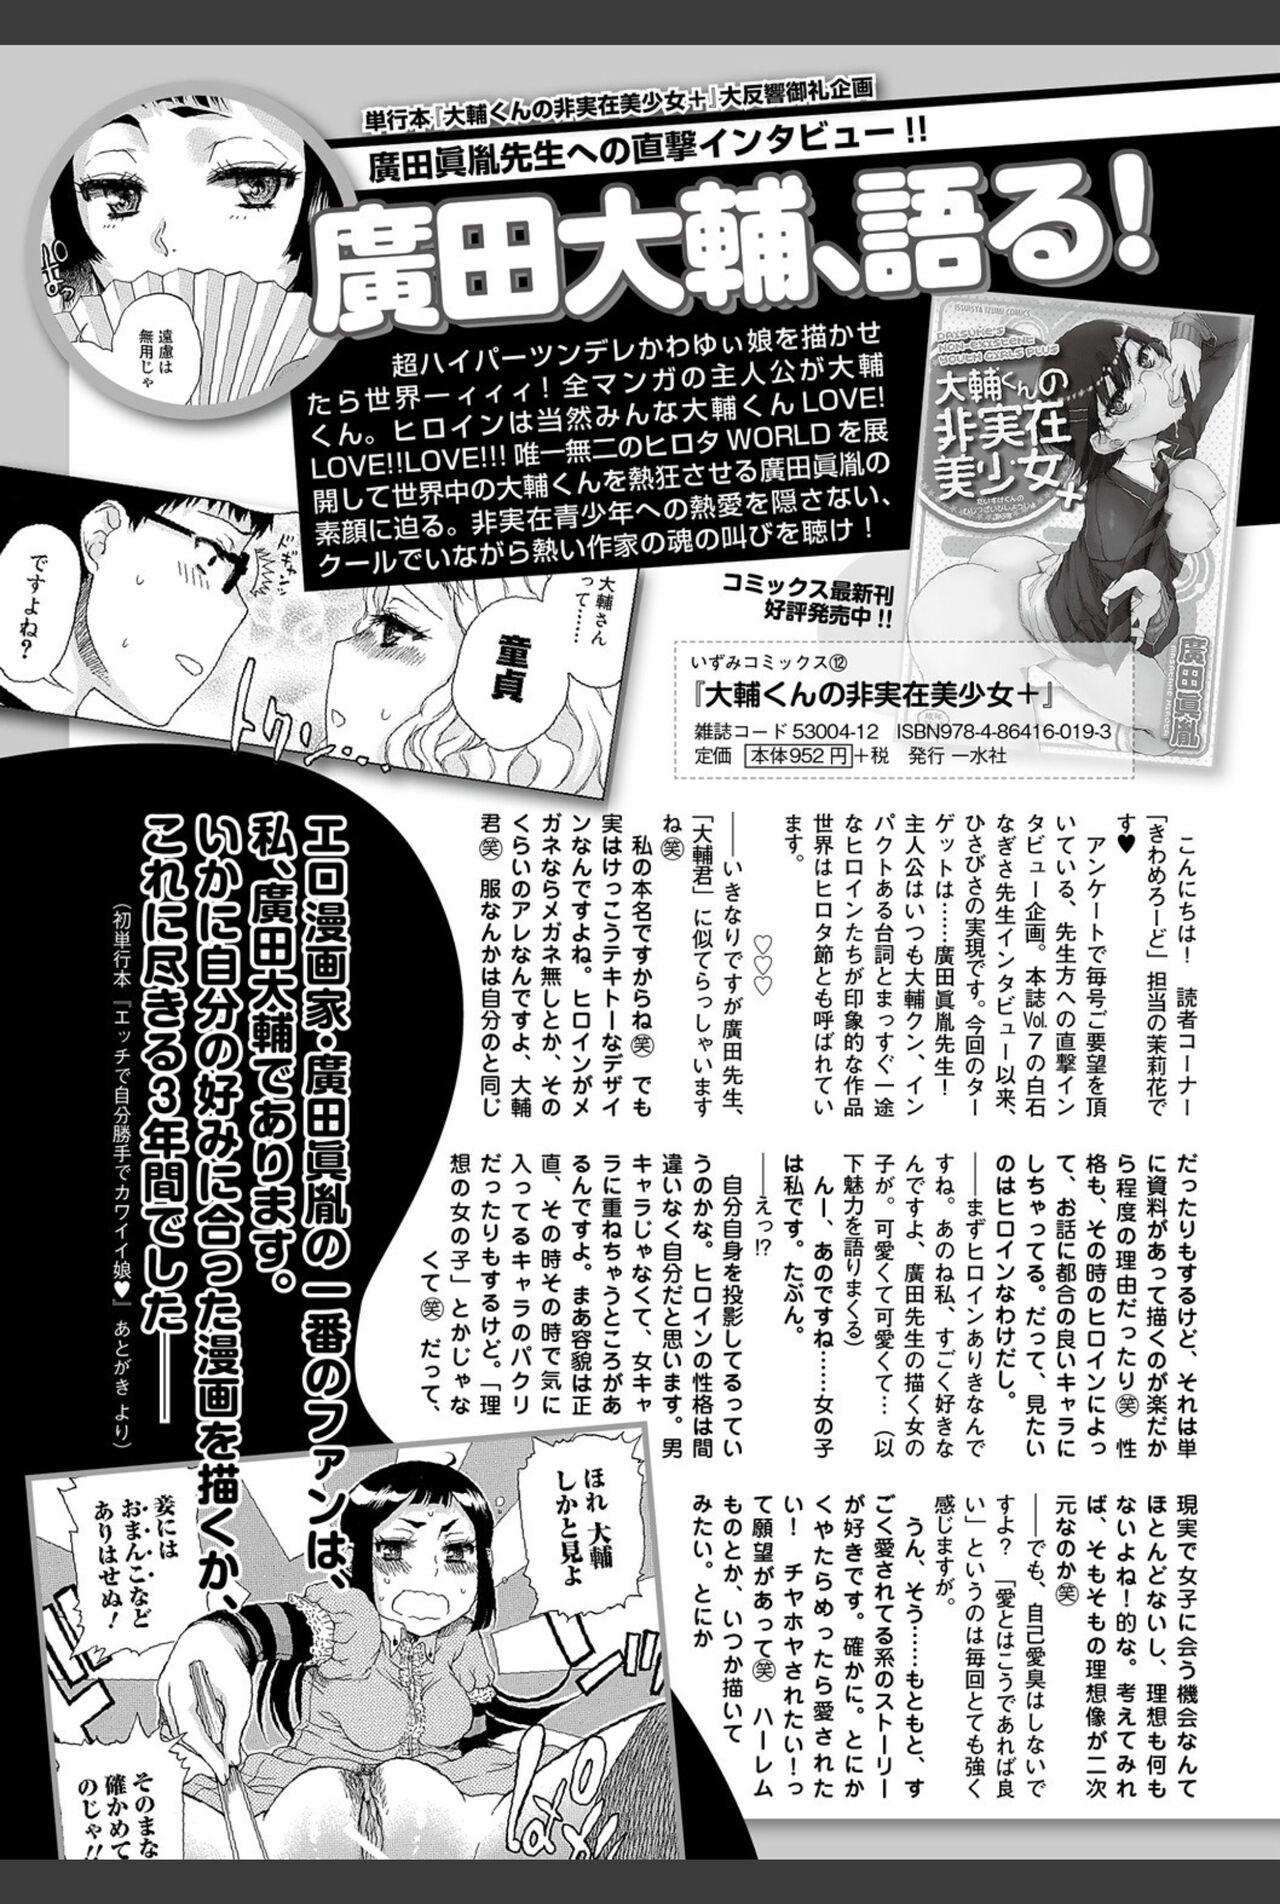 Bishoujo Kakumei KIWAME 2011-02 Vol.12 143